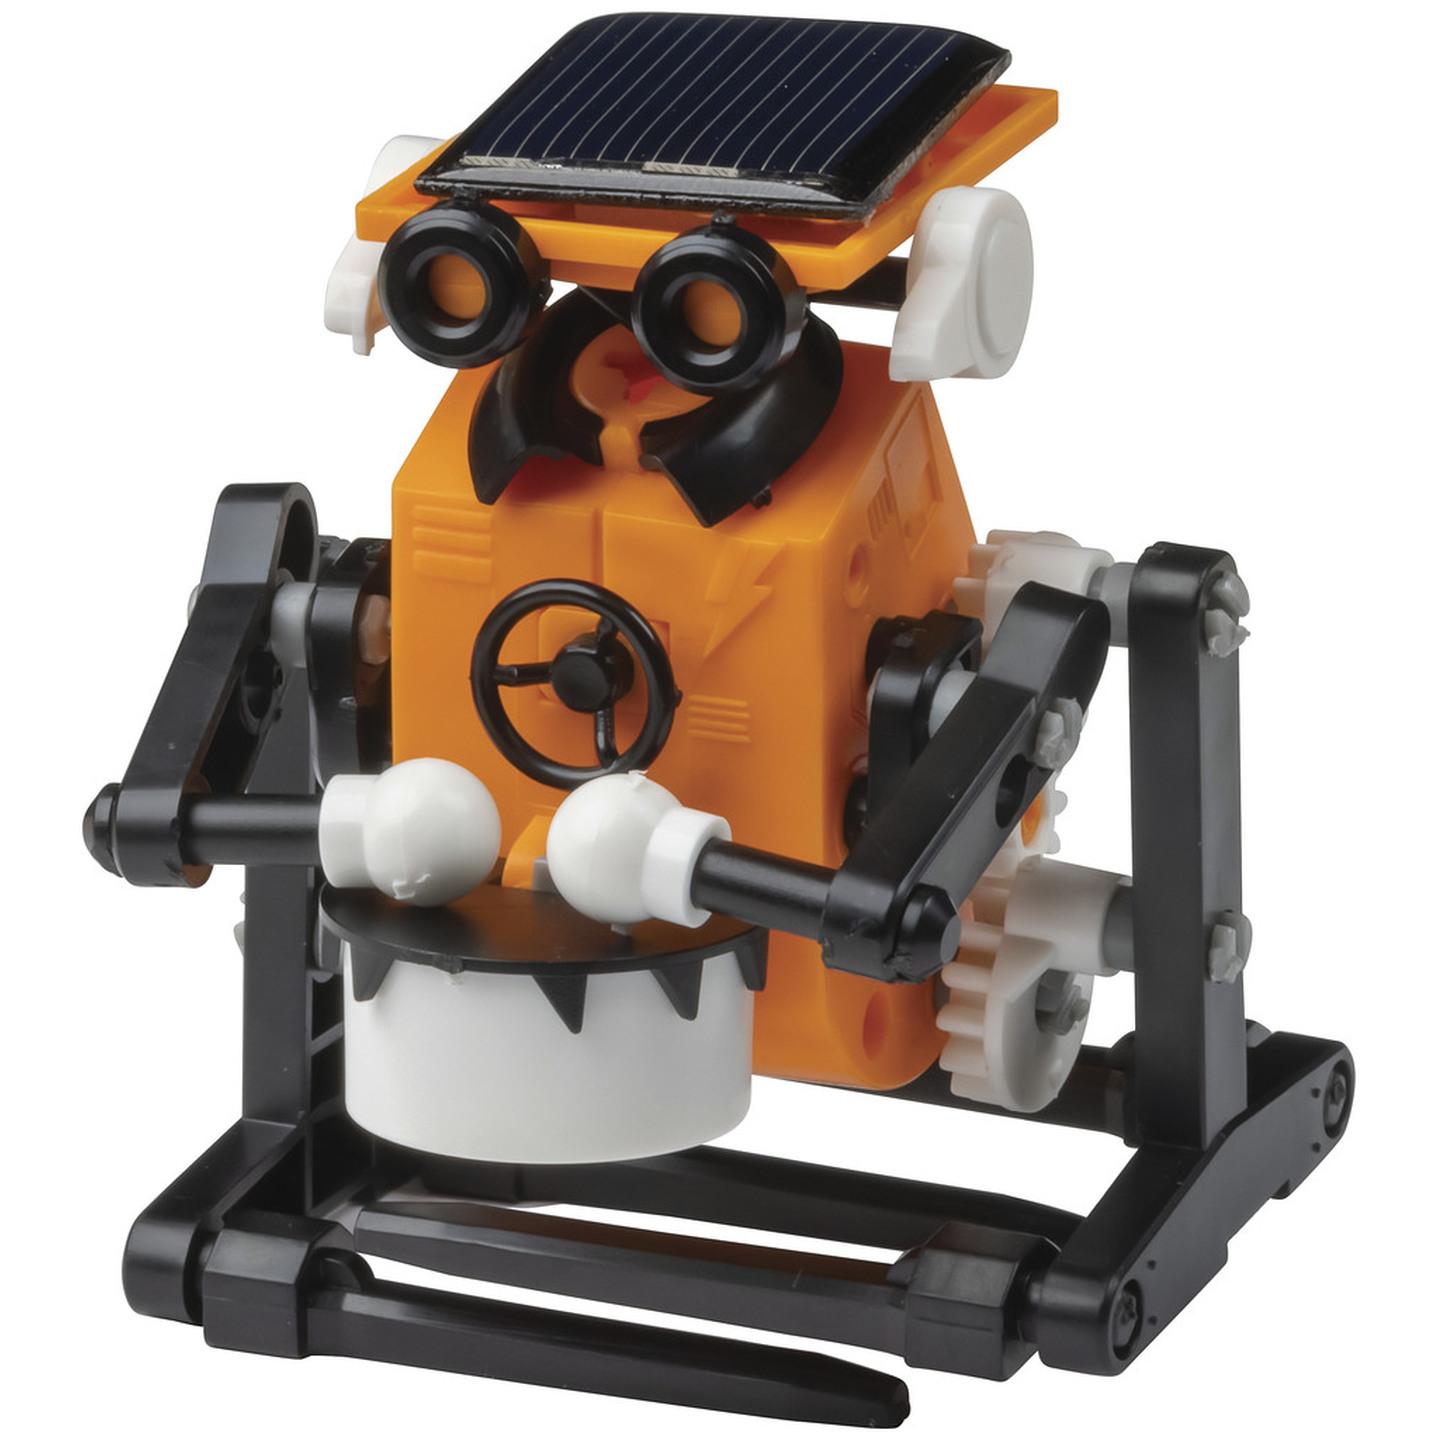 8 in 1 Solar Educational Robot Kit